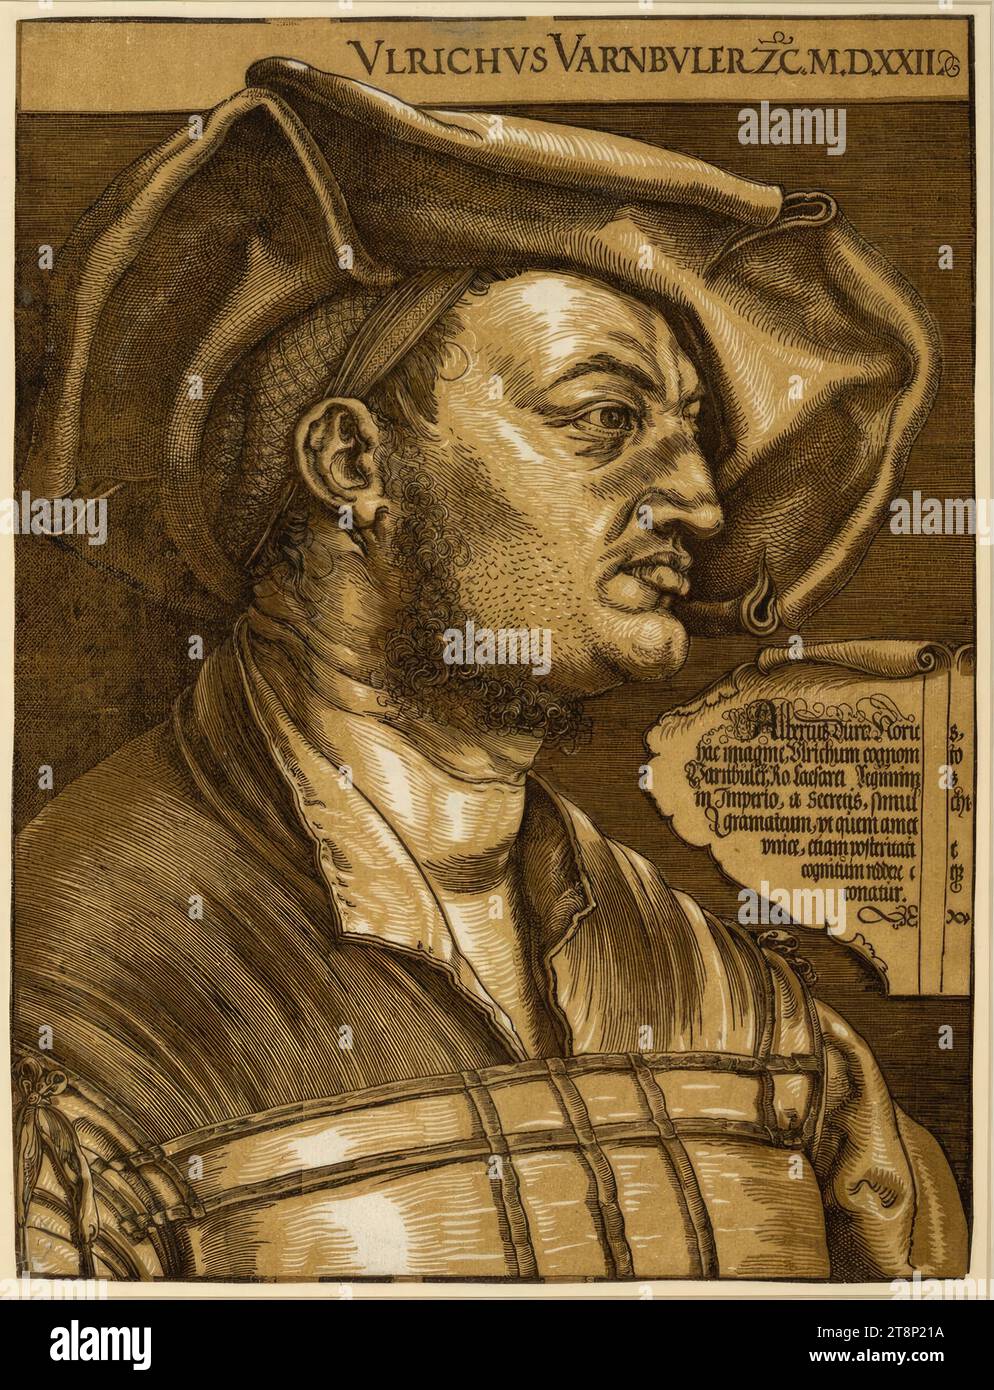 Ritratto di Ulrich Varnbüler, Albrecht Dürer (Norimberga 1471 - 1528 Norimberga), 1522 (stampato da Blaeu, Amsterdam, dopo il 1620), stampa, tagliato in legno (clair Obscur Woodcut), con stampa marrone; il foglio è ritagliato fino all'immagine, i resti del platemark sono distinguibili, foglio: 43,3 x 32,8 cm, r.o. 'VLRICHVS VARNBVLER ZXX M.m.m.m.m.m.m.m.m.m.; "Albertus Durer Noric[u]s, hac Imagine, Vlrichum cognom[en]to, Varnbuler, RO. Caesarei Regiminis, in Imperio, a Secretis, simul[ar]chi, gramateum, vt quem amet, vnice, etiam posteriati [vul]t/ cognitum reddere c[oler]eque Foto Stock